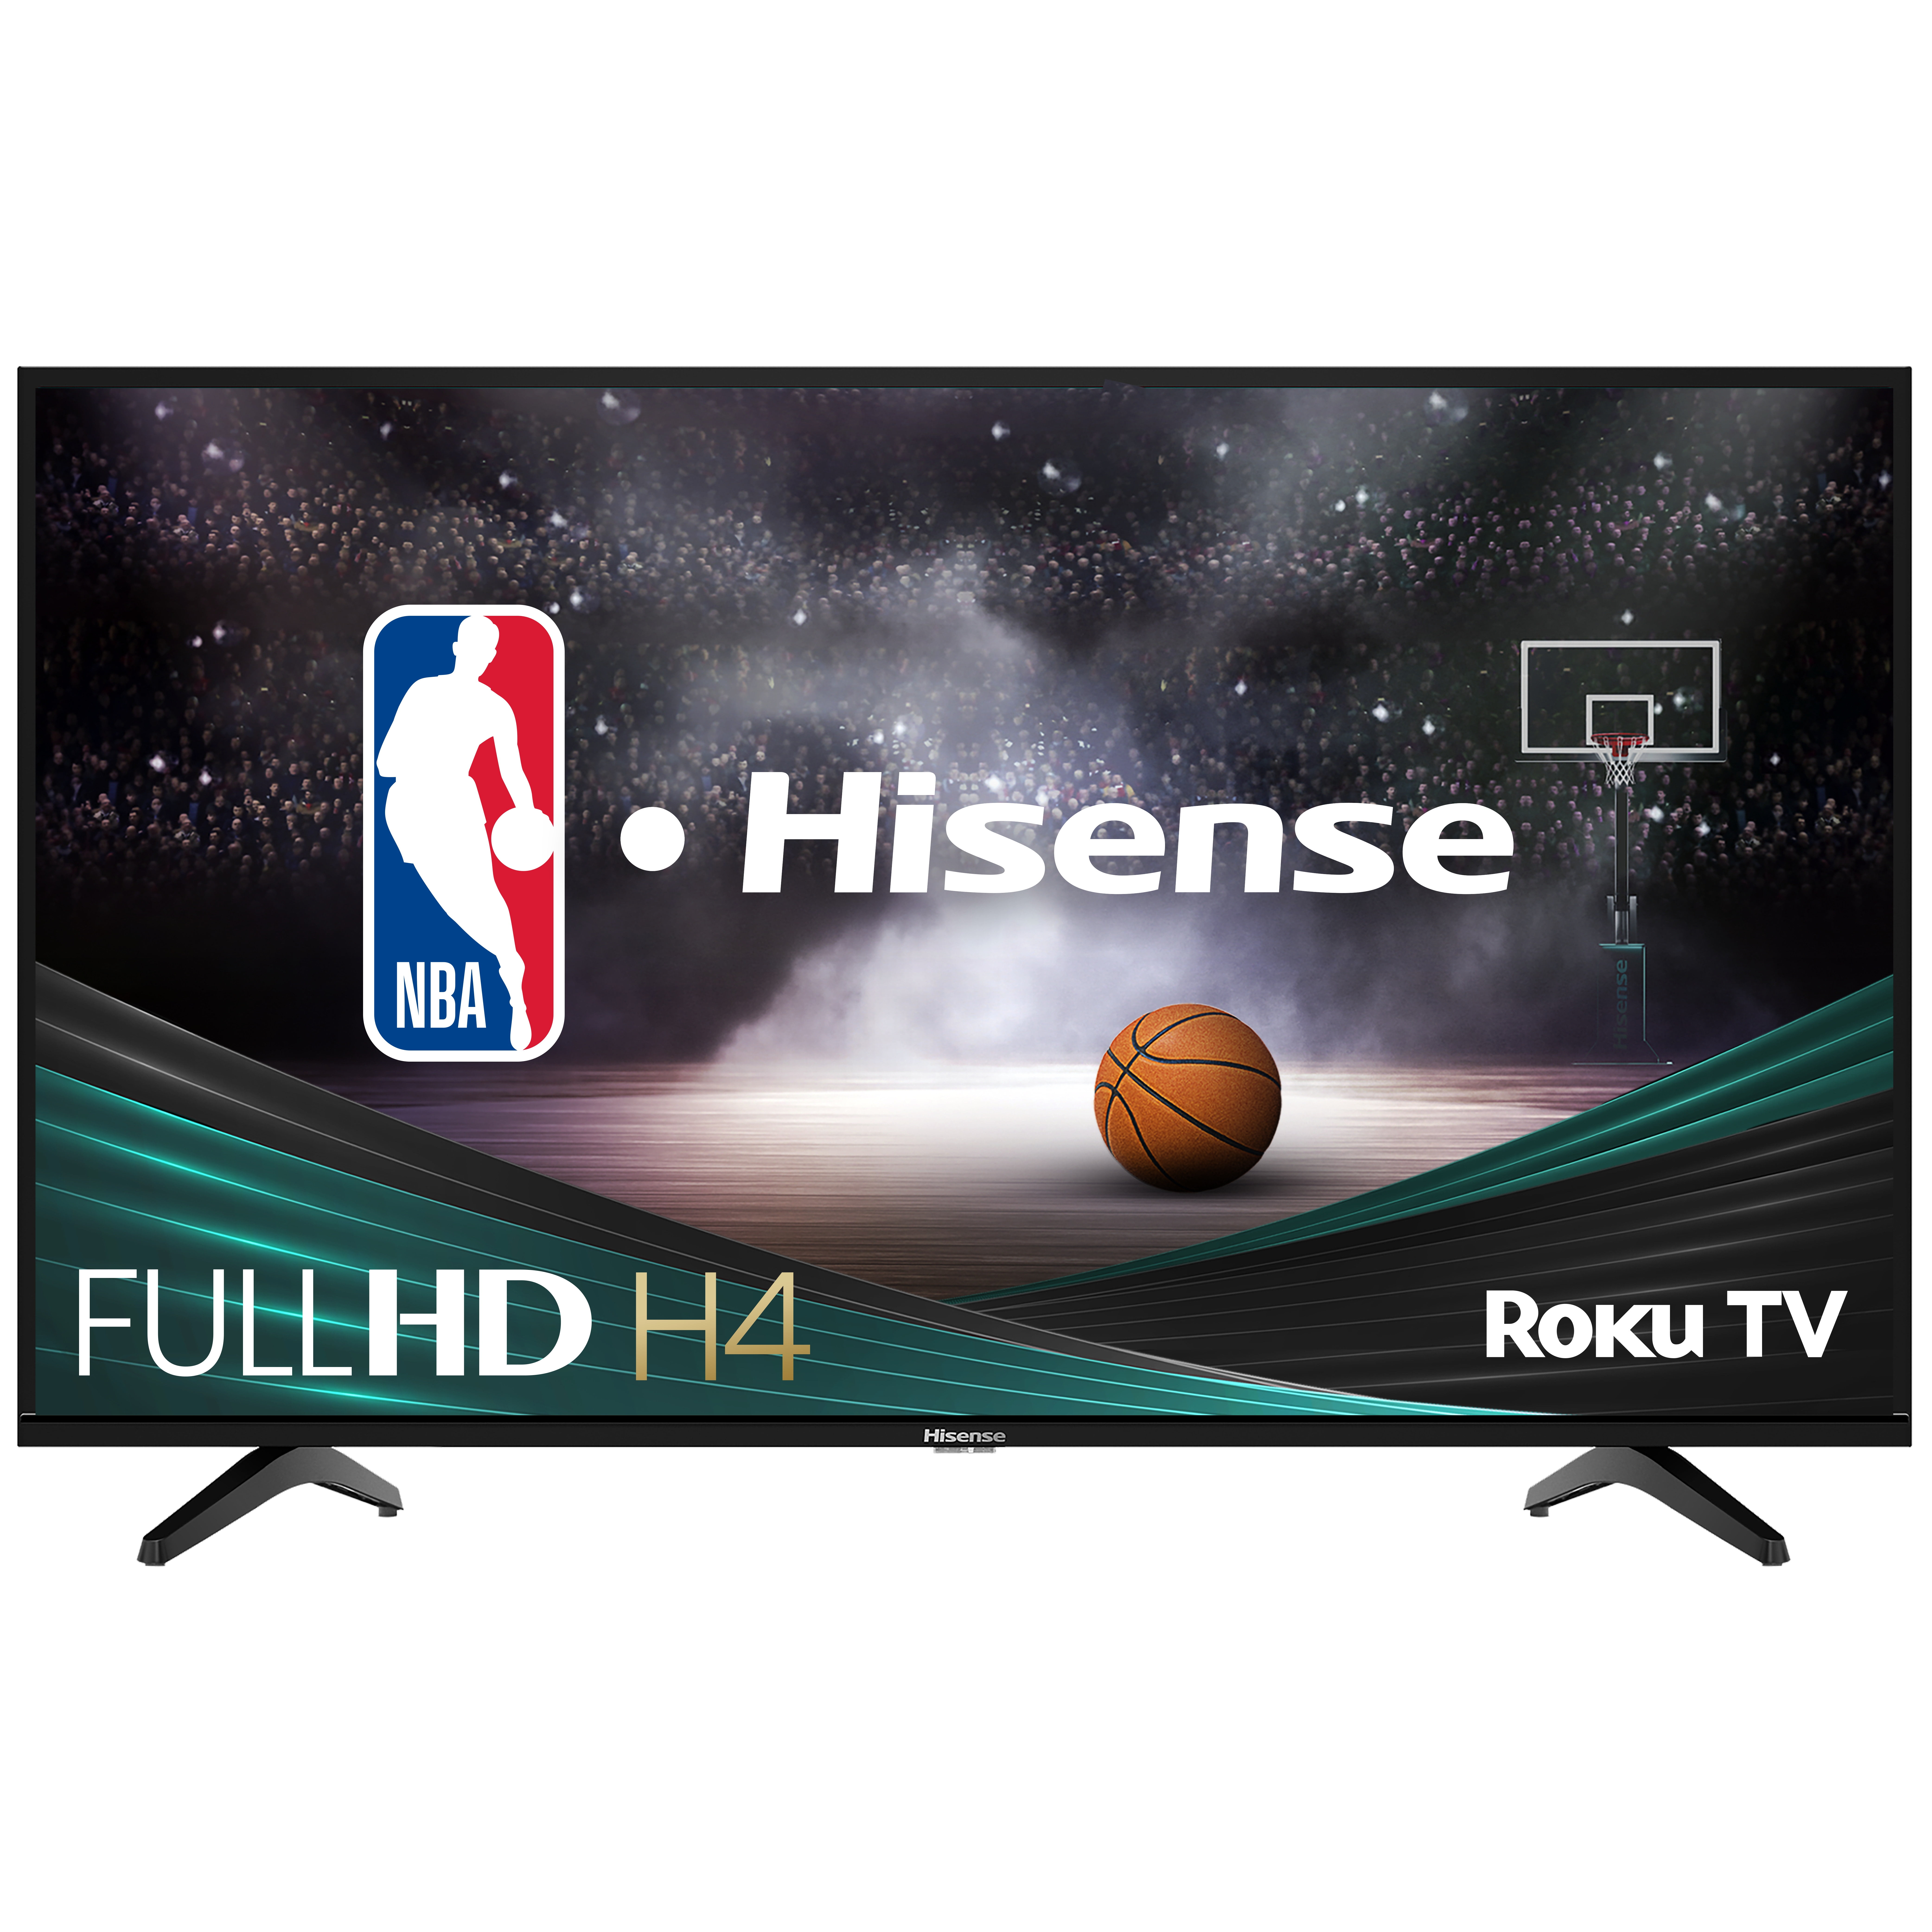 Hisense-40-Class-1080p-FHD-LED-LCD-Roku-Smart-TV-H4030F-Series-40H4030F1_fb8a4c47-457e-4eae-ab60-0b5b937b08d9.95248d4754387d532637433c5430eaf2.jpeg